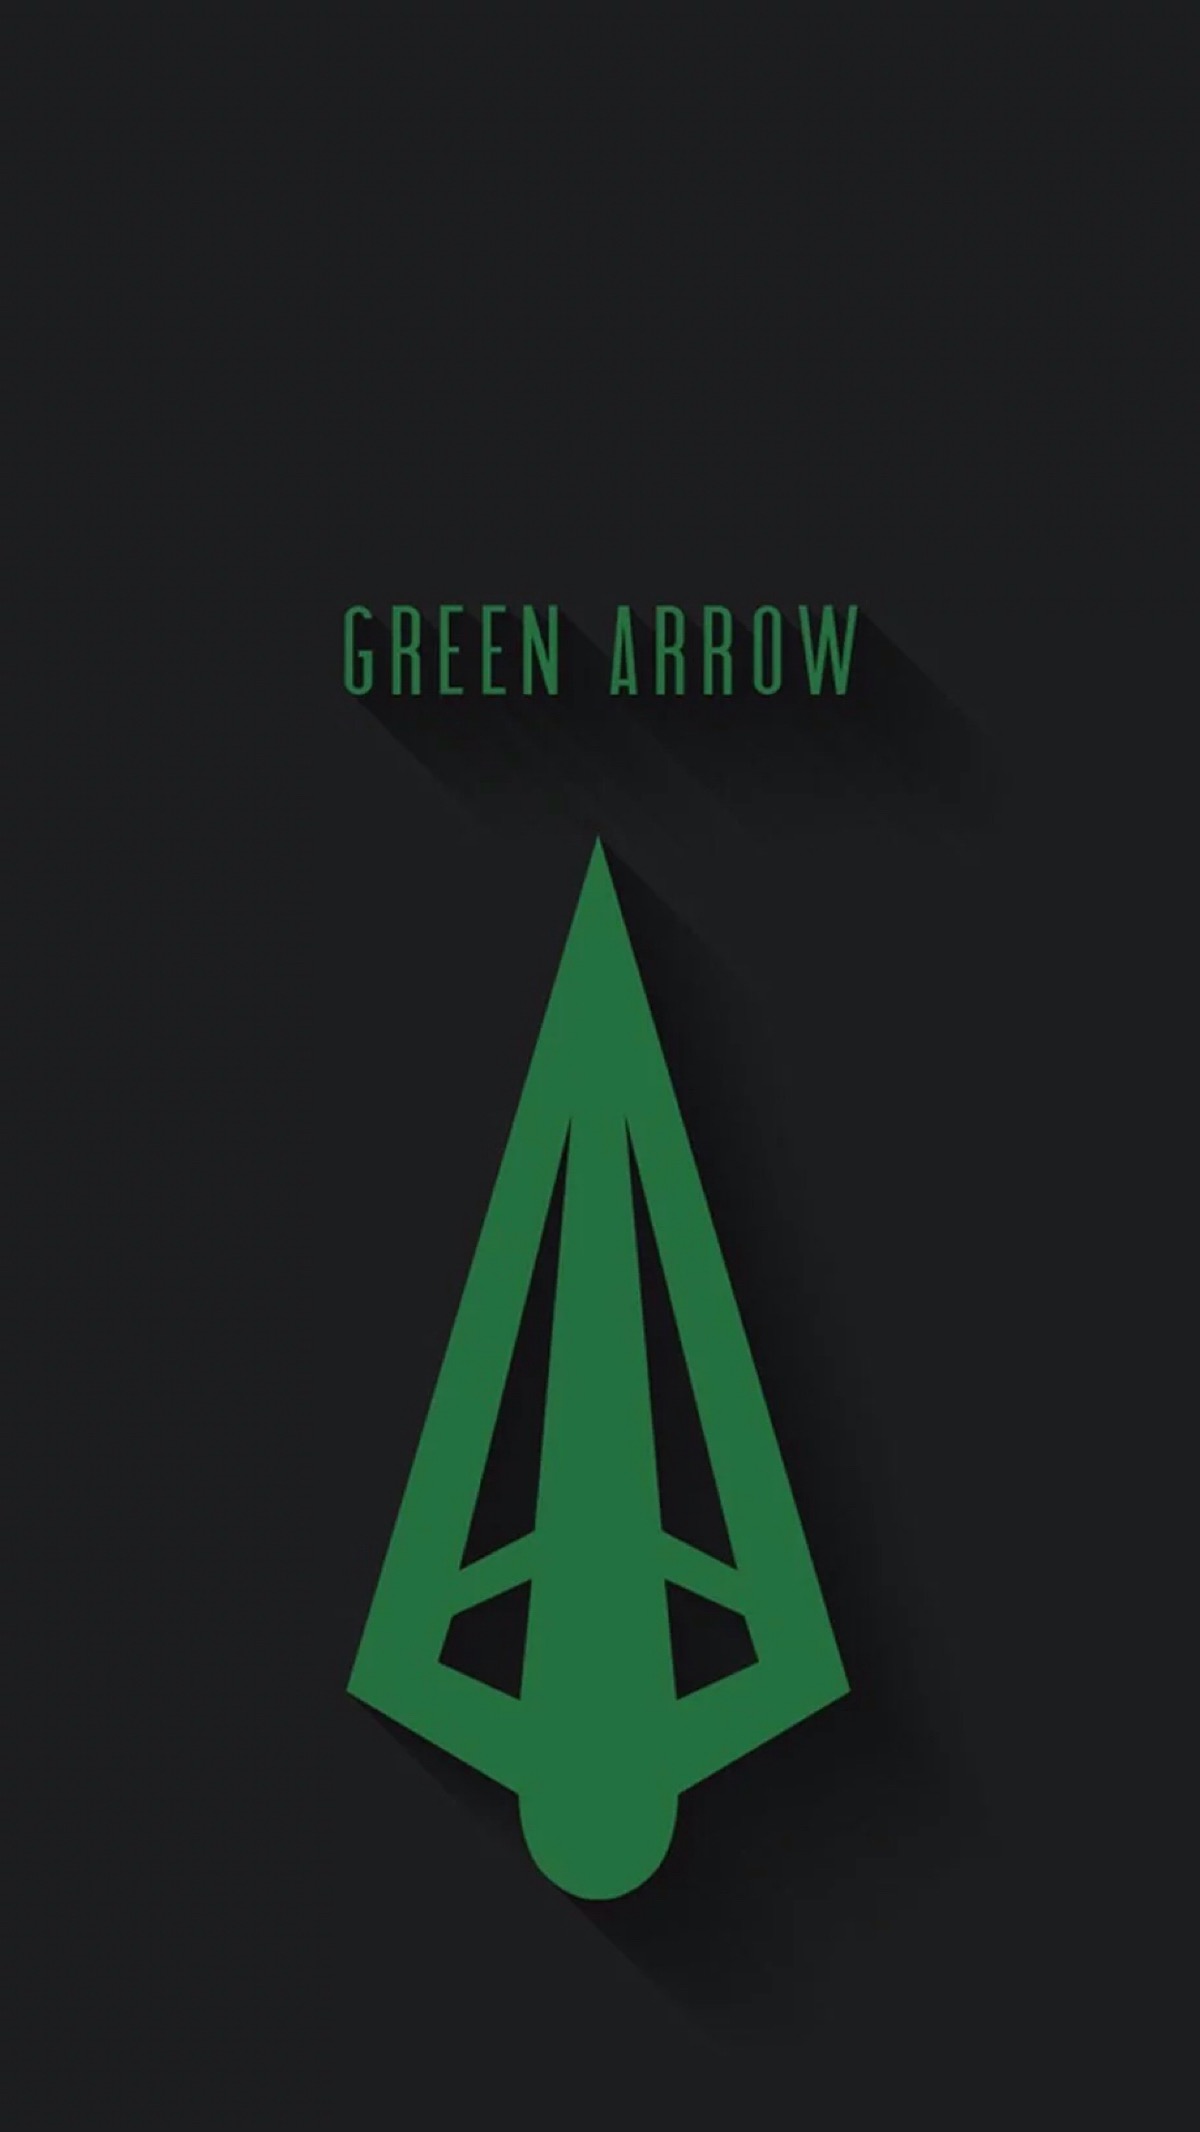 绿箭logo含义图片